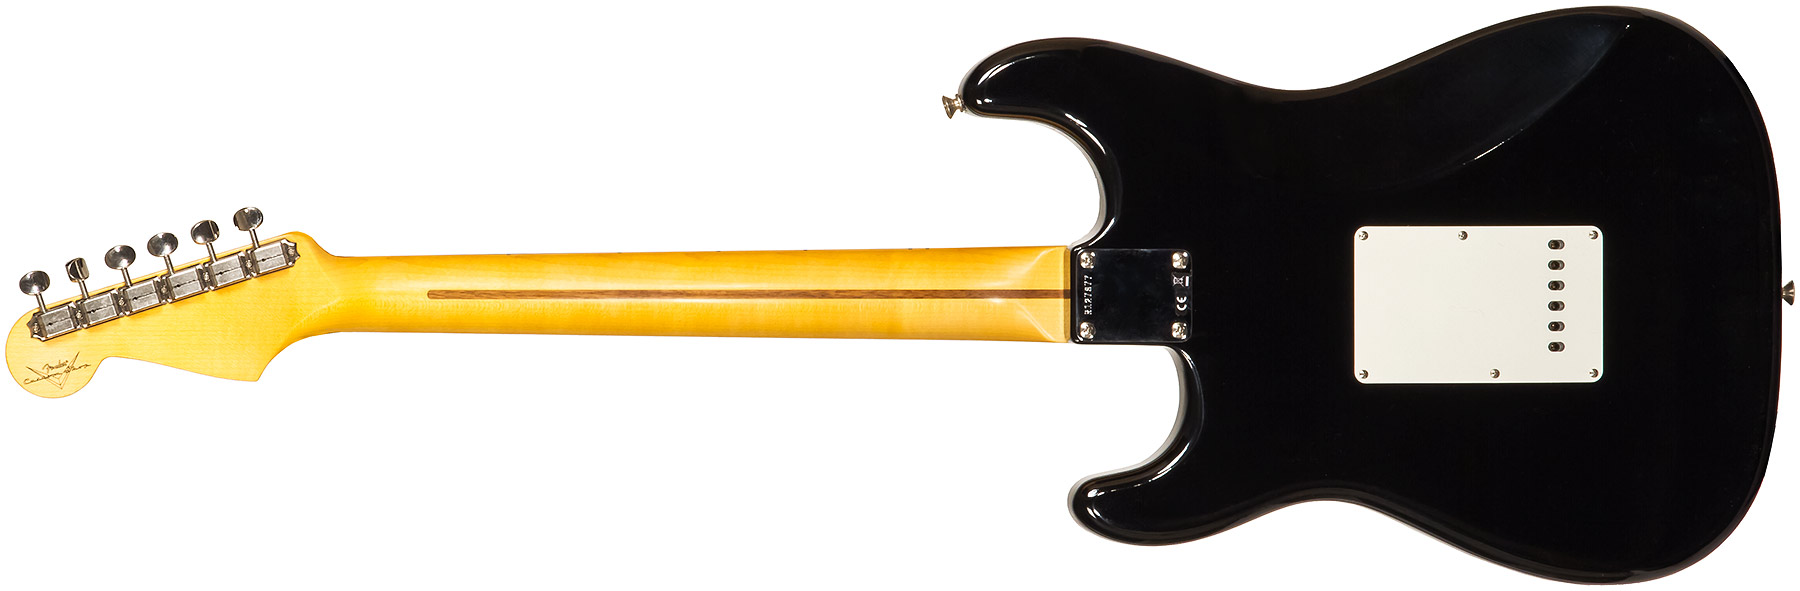 Fender Custom Shop Strat 1955 3s Trem Mn #r127877 - Closet Classic Black - Guitare Électrique Forme Str - Variation 1